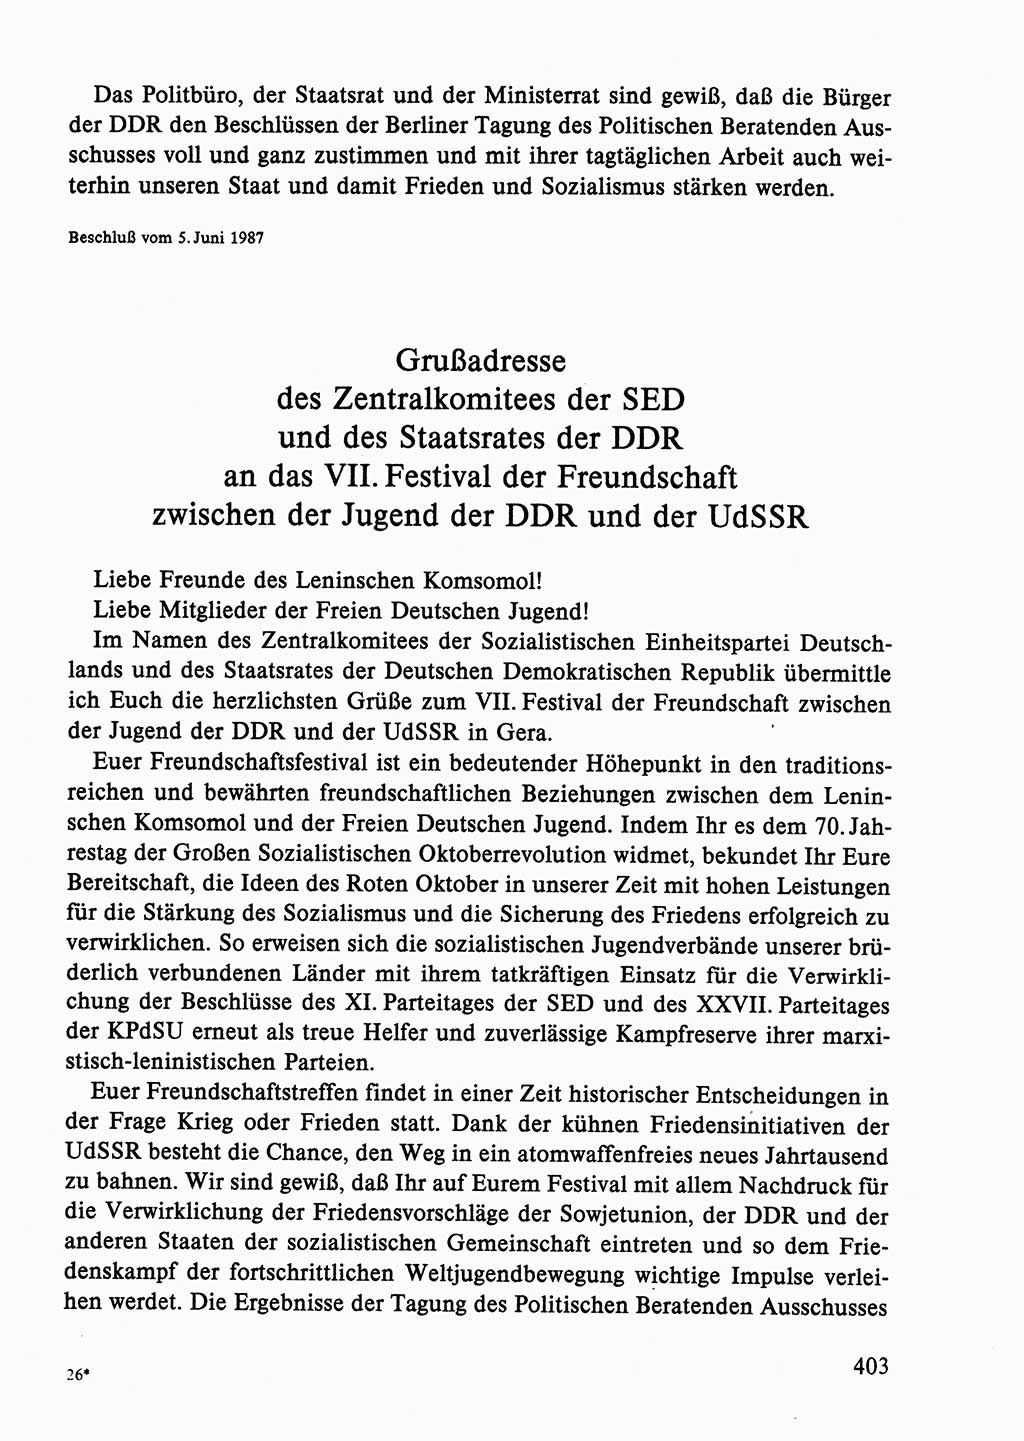 Dokumente der Sozialistischen Einheitspartei Deutschlands (SED) [Deutsche Demokratische Republik (DDR)] 1986-1987, Seite 403 (Dok. SED DDR 1986-1987, S. 403)